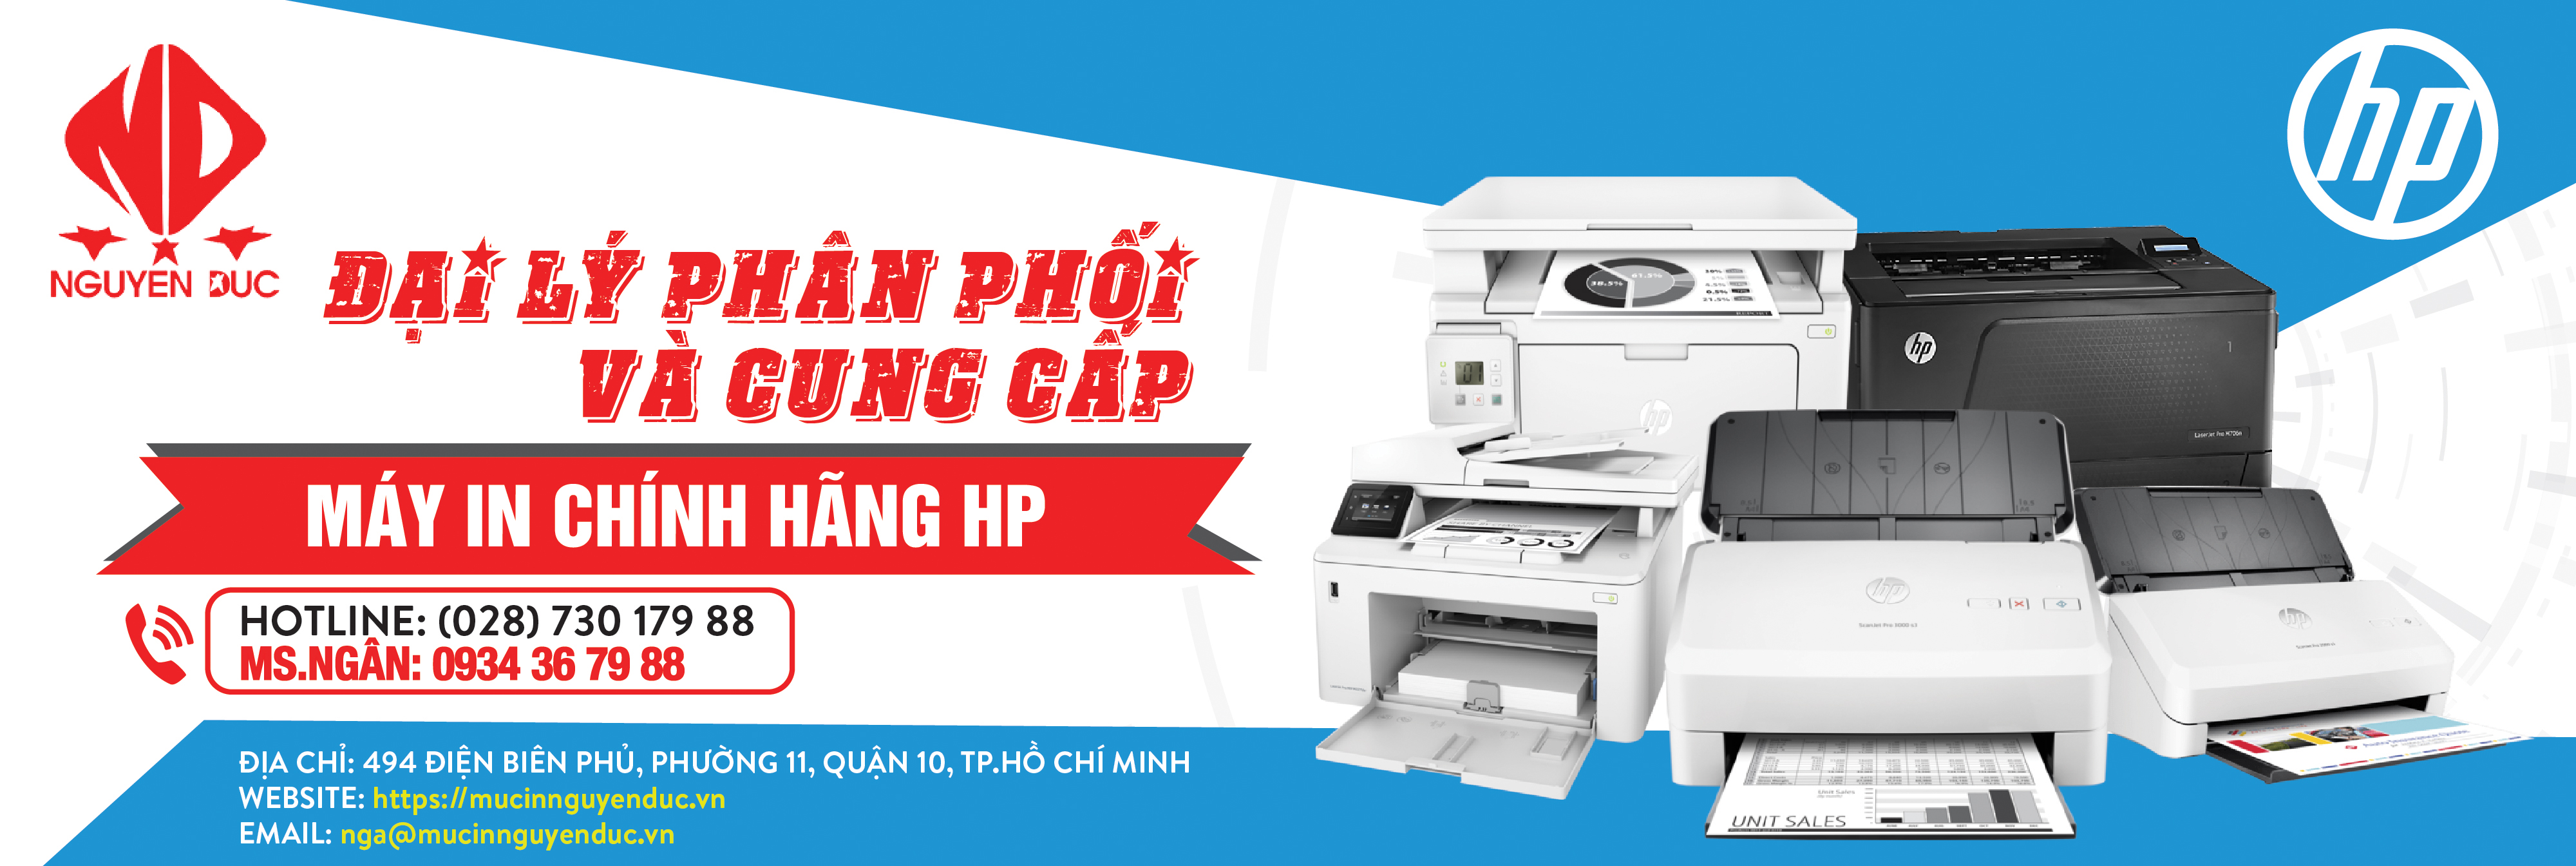 Đại lý phân phối máy in HP Laserjet Pro 227SDN (G3Q74A) chính hãng, giao hàng tại tỉnh Thái Nguyên